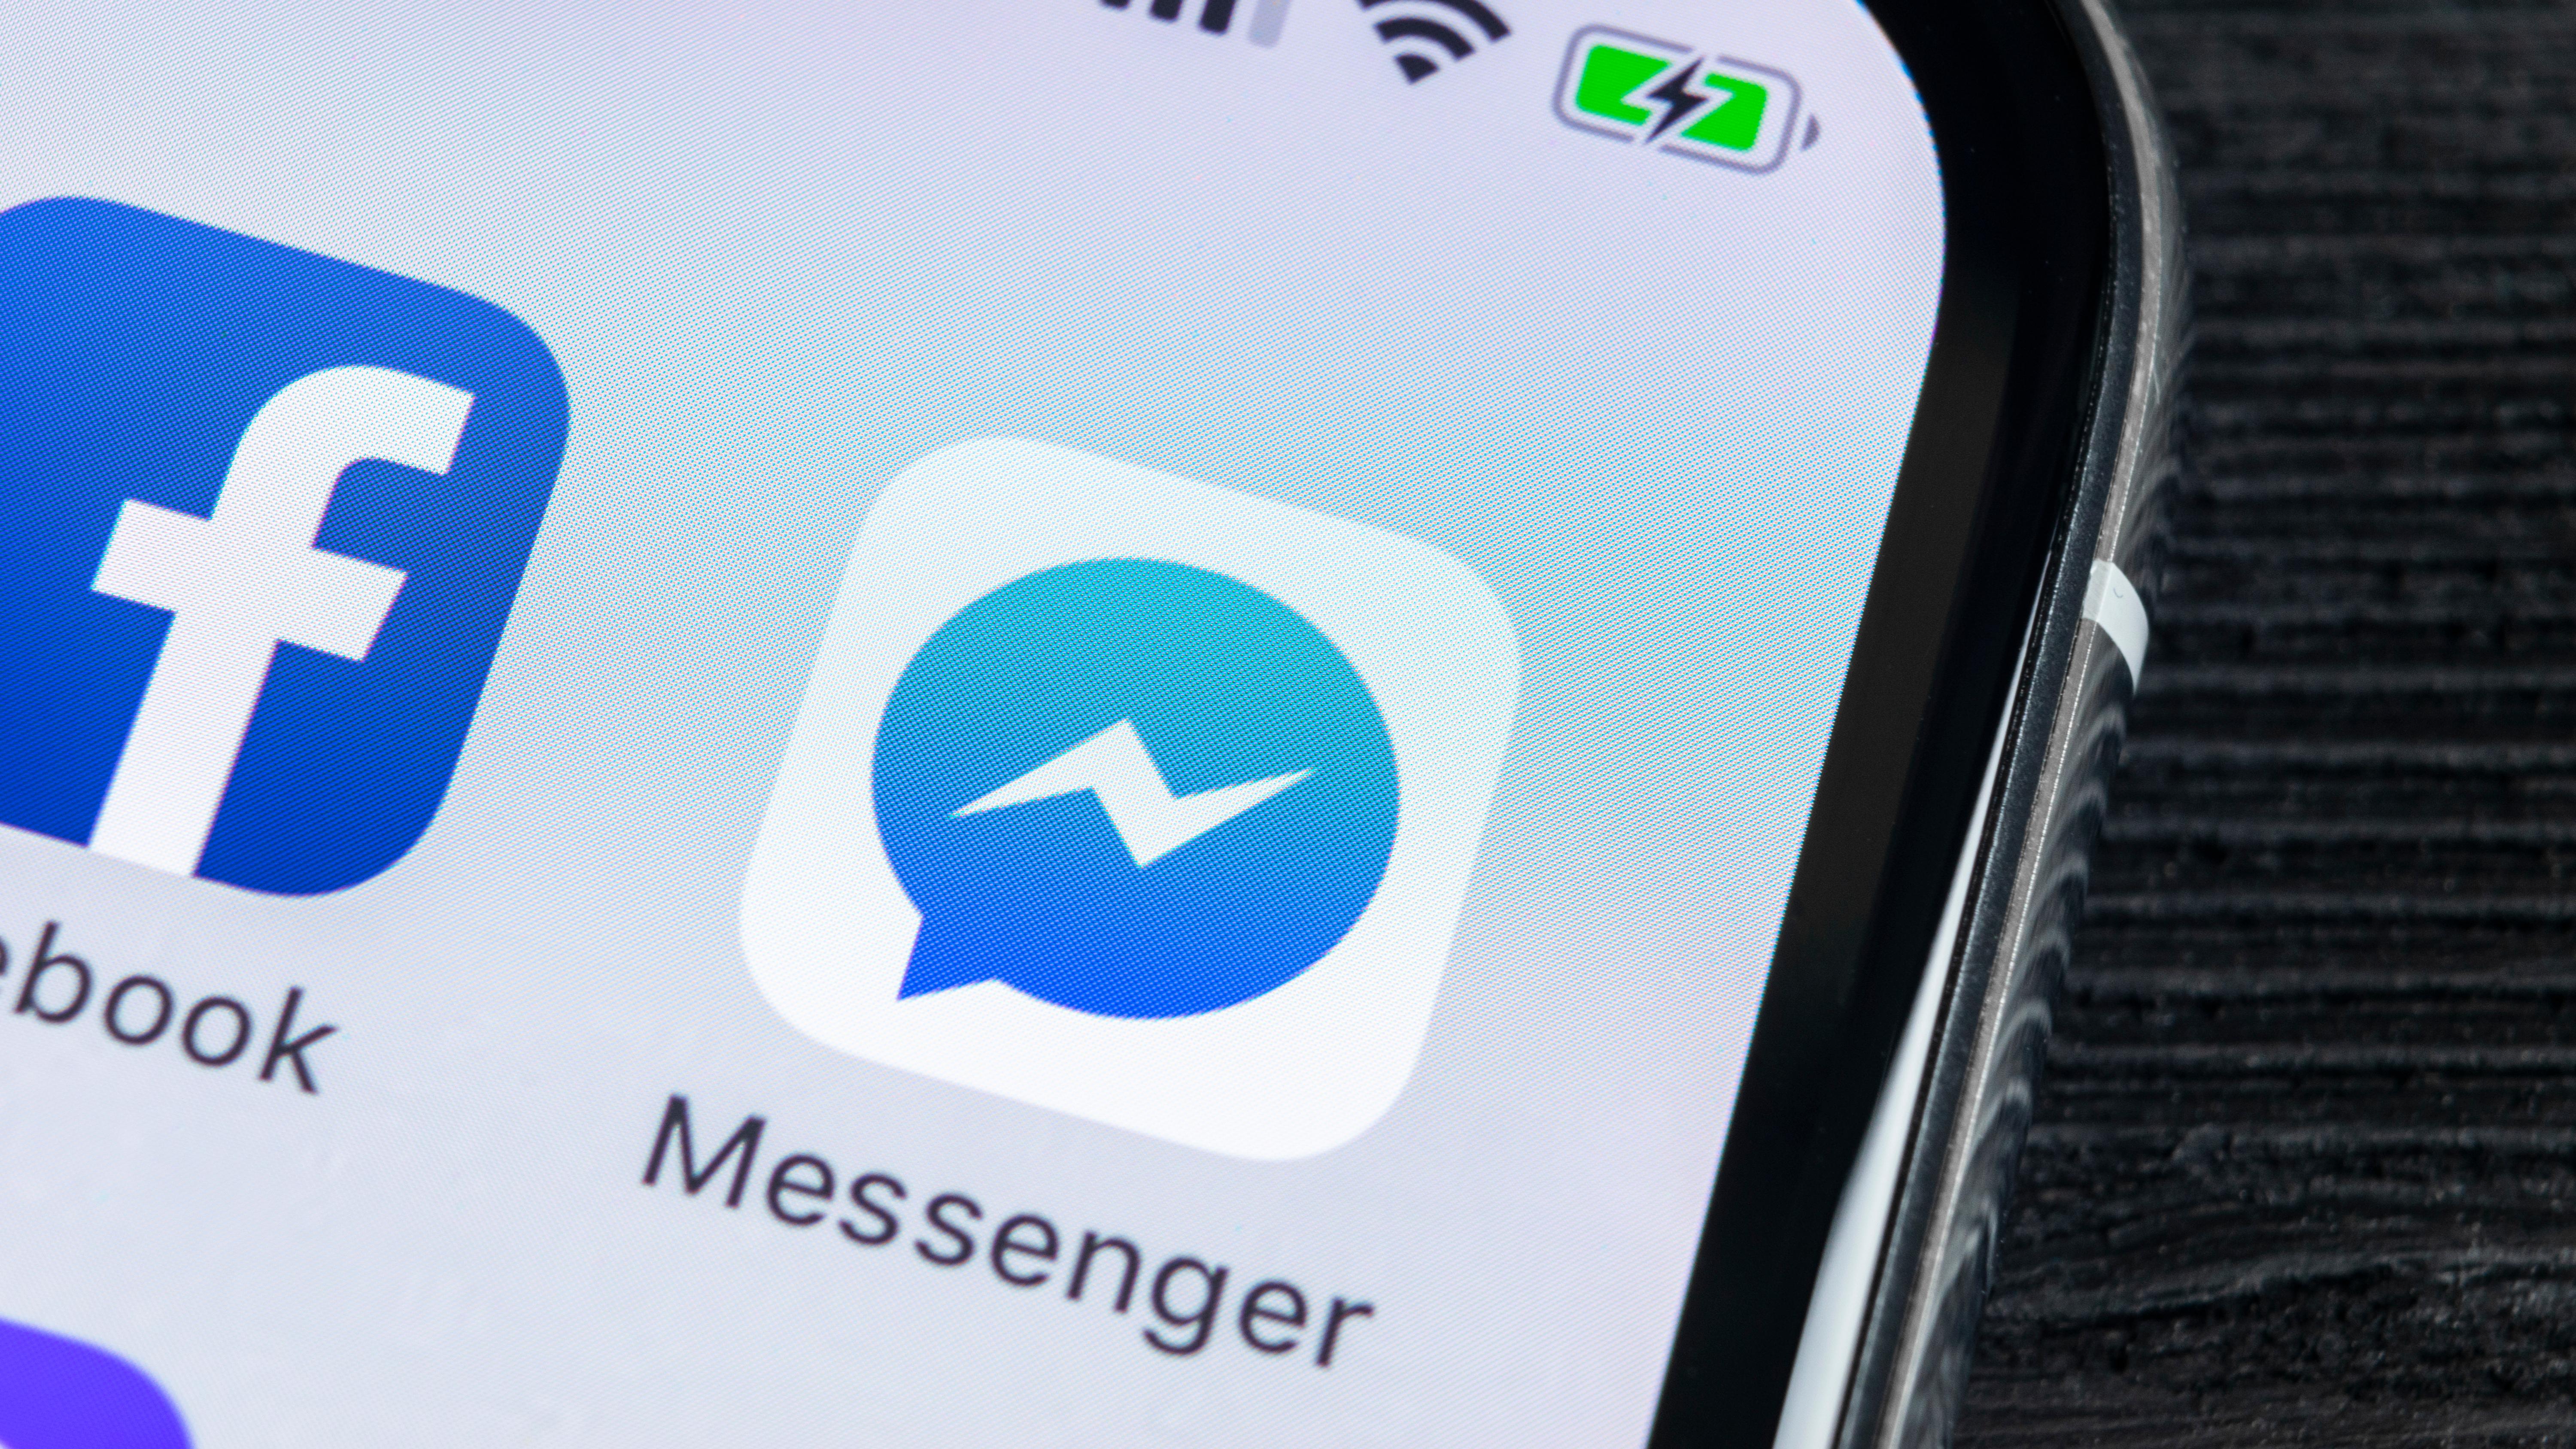 Facebook Messenger dostaje pasek wyszukiwania emoji. Jest też nowy motyw  czatu